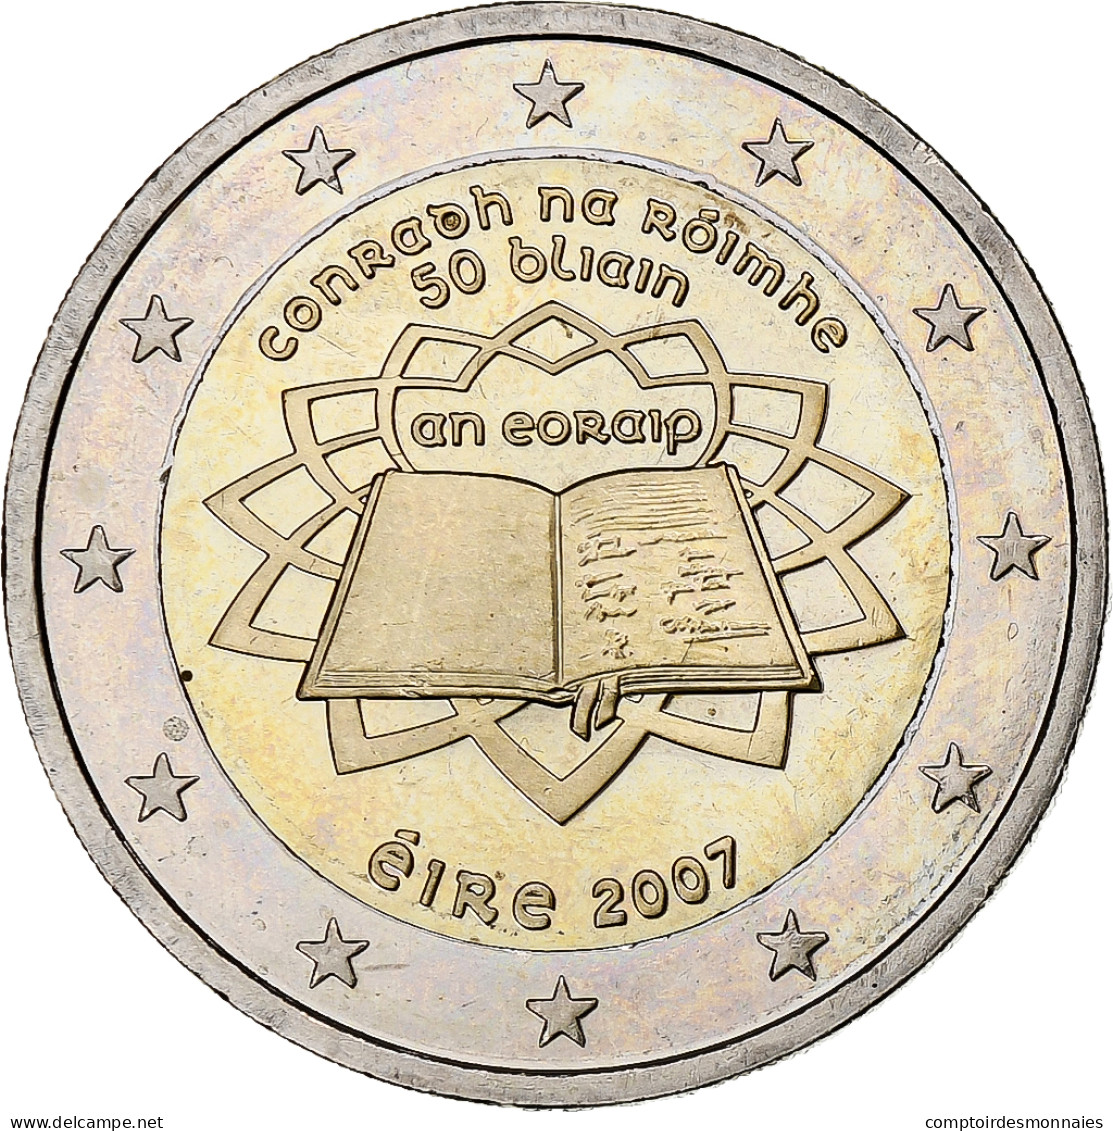 République D'Irlande, 2 Euro, Traité De Rome 50 Ans, 2007, SUP+ - Irland